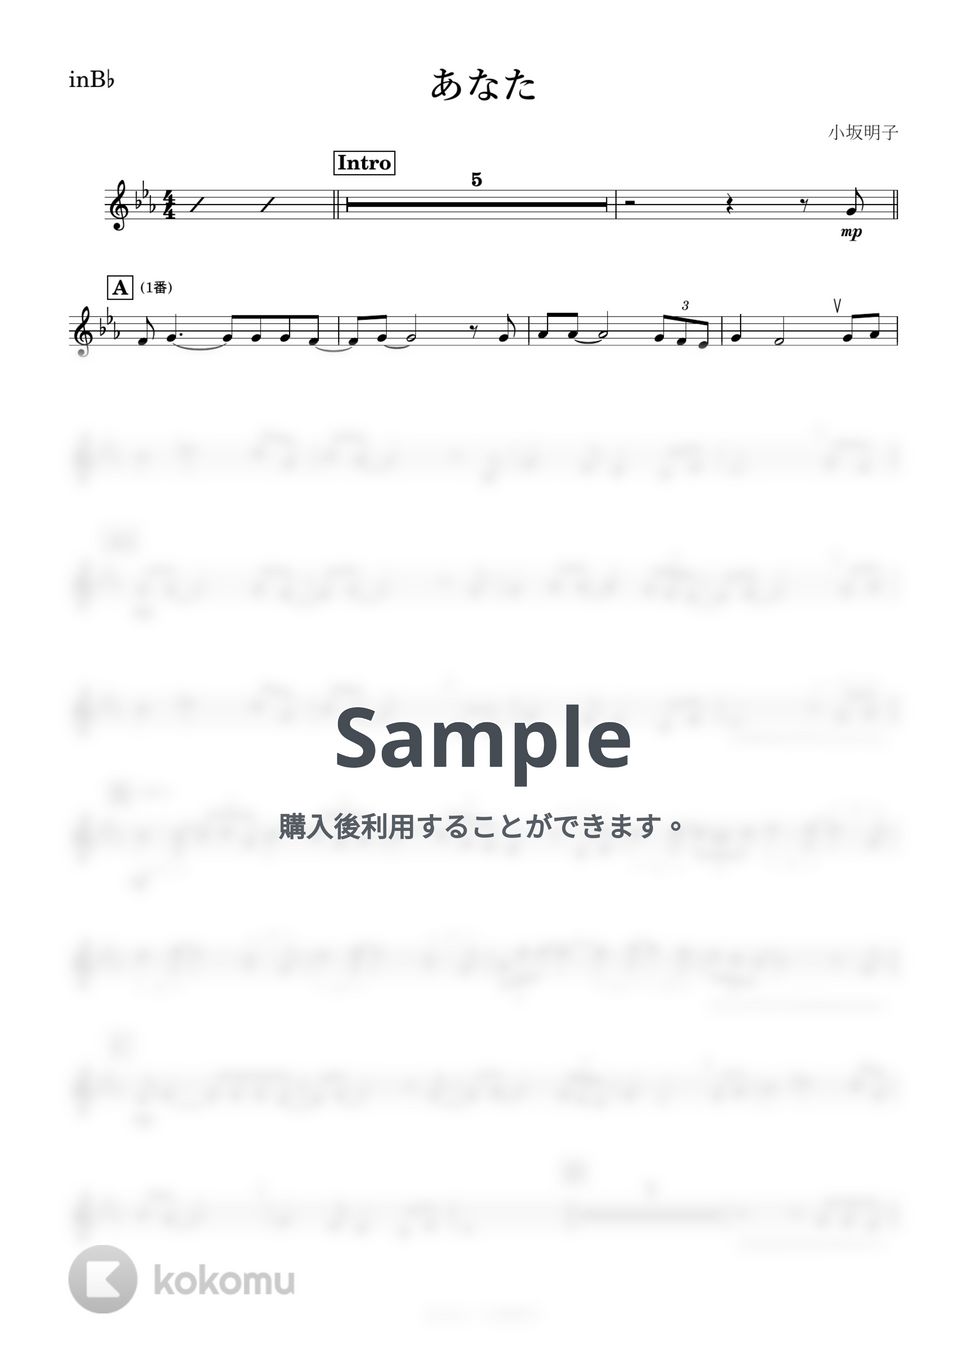 小坂明子 - あなた (B♭) by kanamusic